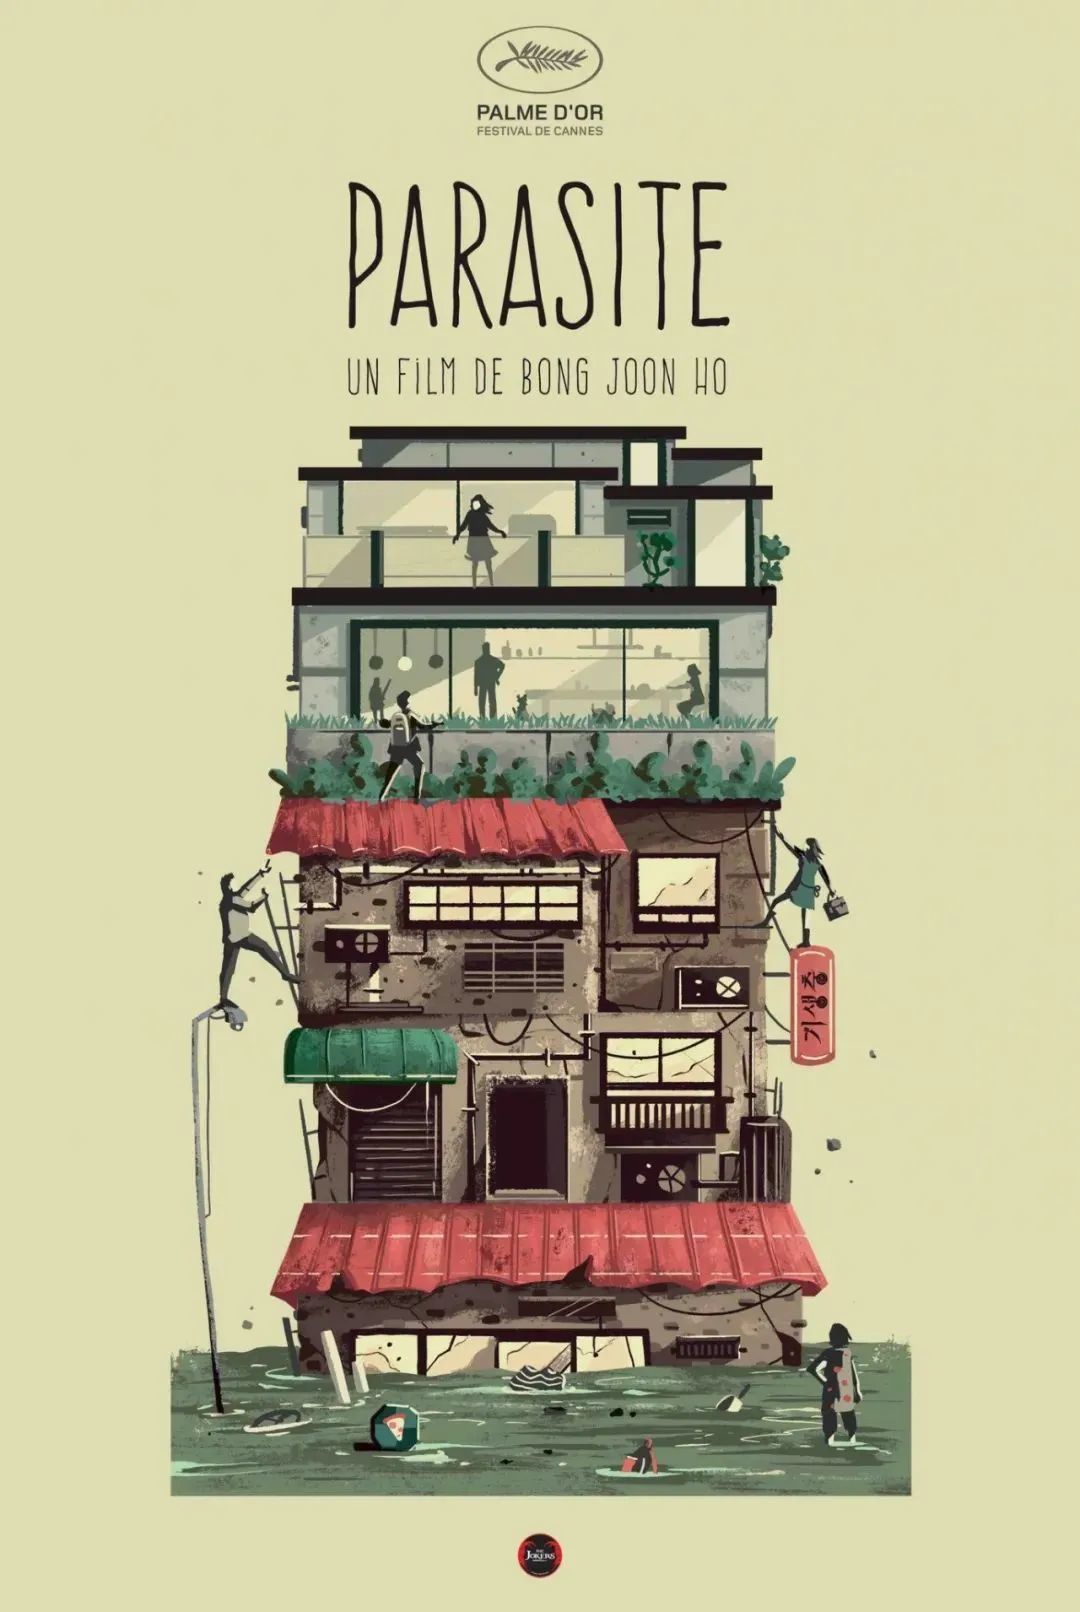 《寄生虫》创意海报。该电影讽刺了韩国贫富分化以及阶层固化的问题